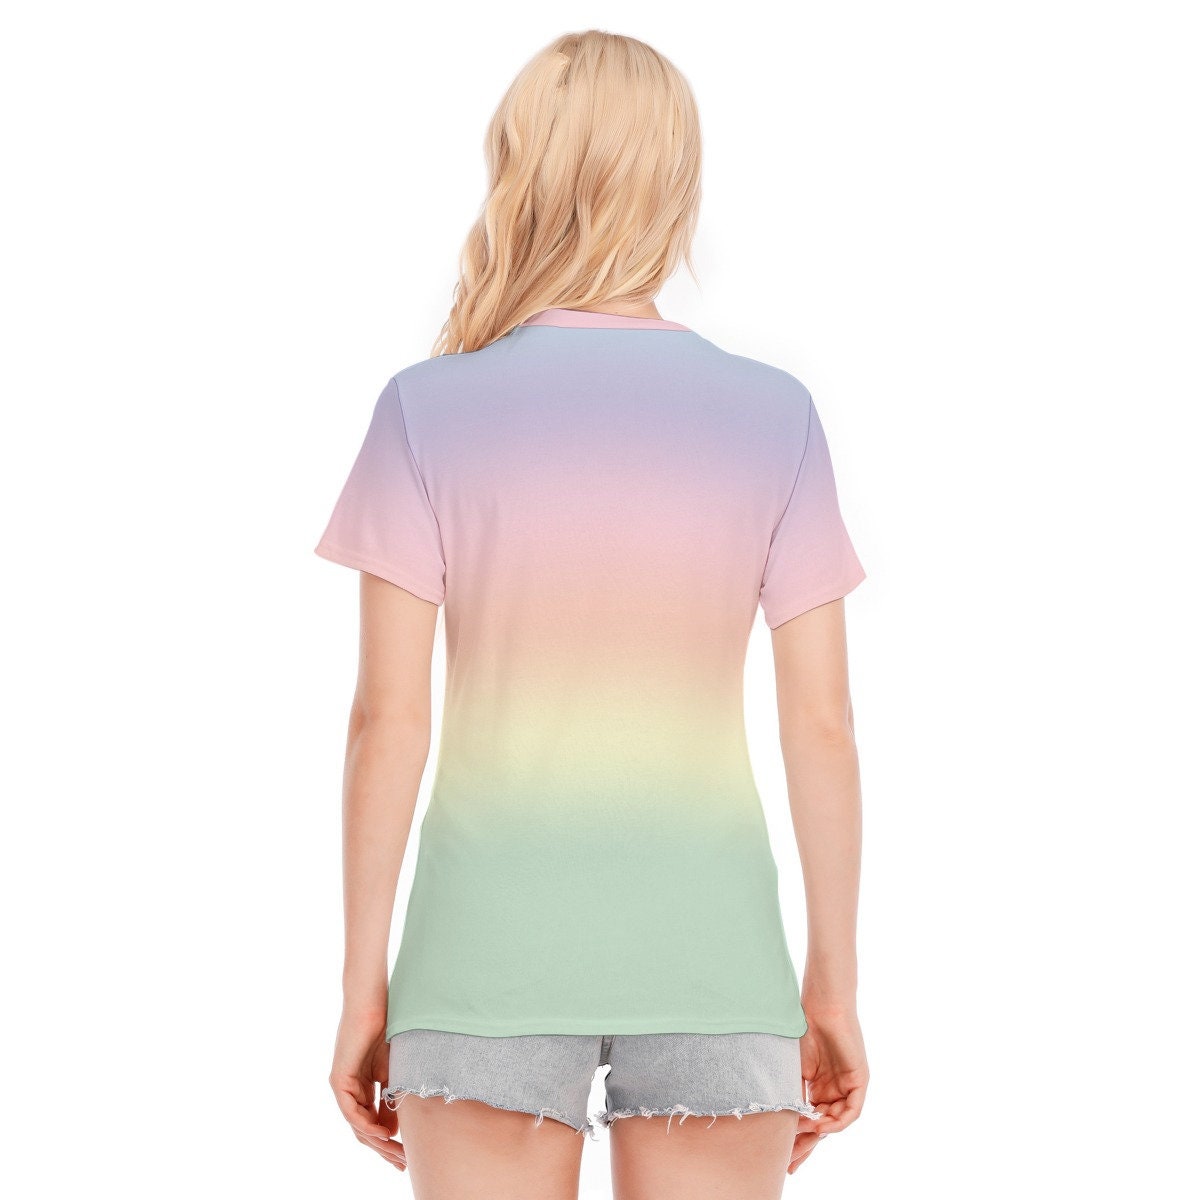 Ombre Top, Rainbow Tops, Ombre Tshirt, Rainbow T-shirt, Womens Tshirts, Unique Tshirt, Ombre T-shirt, Abstract Tshirt, Artistique Tshirt